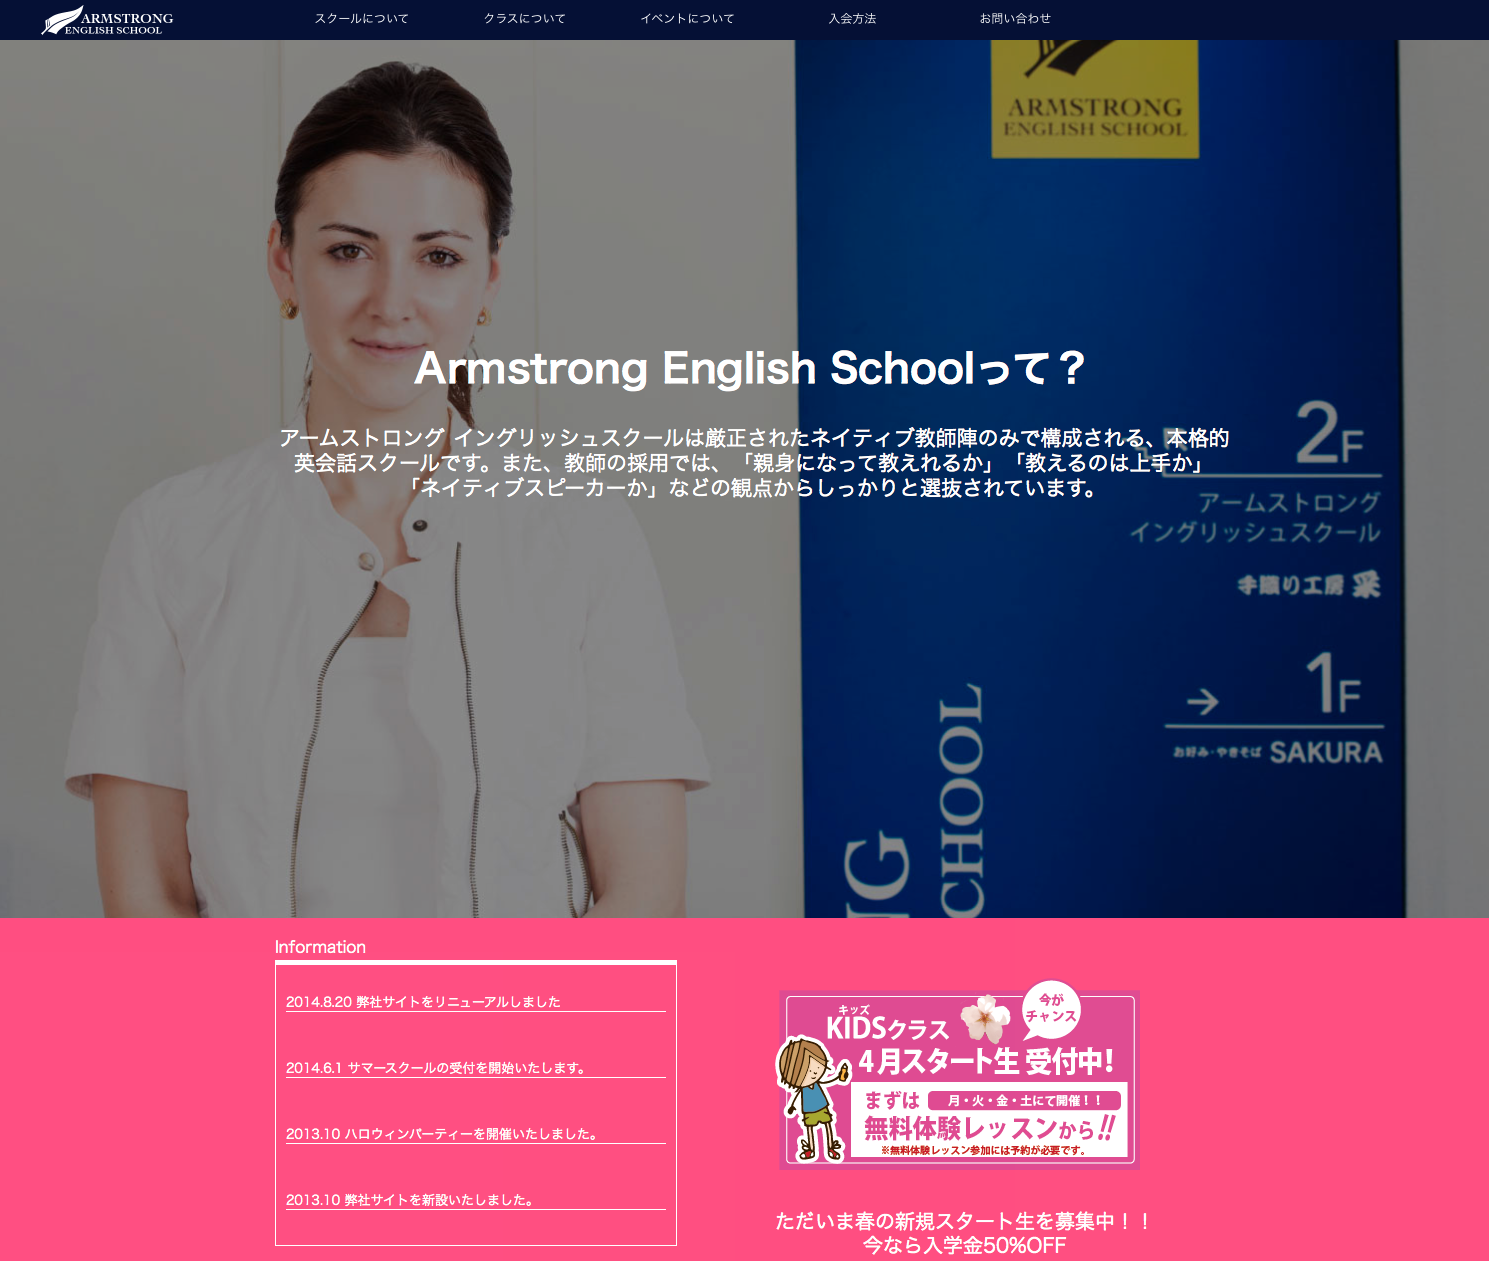 Armstrong English School 様ウェブサイトを制作いたしました